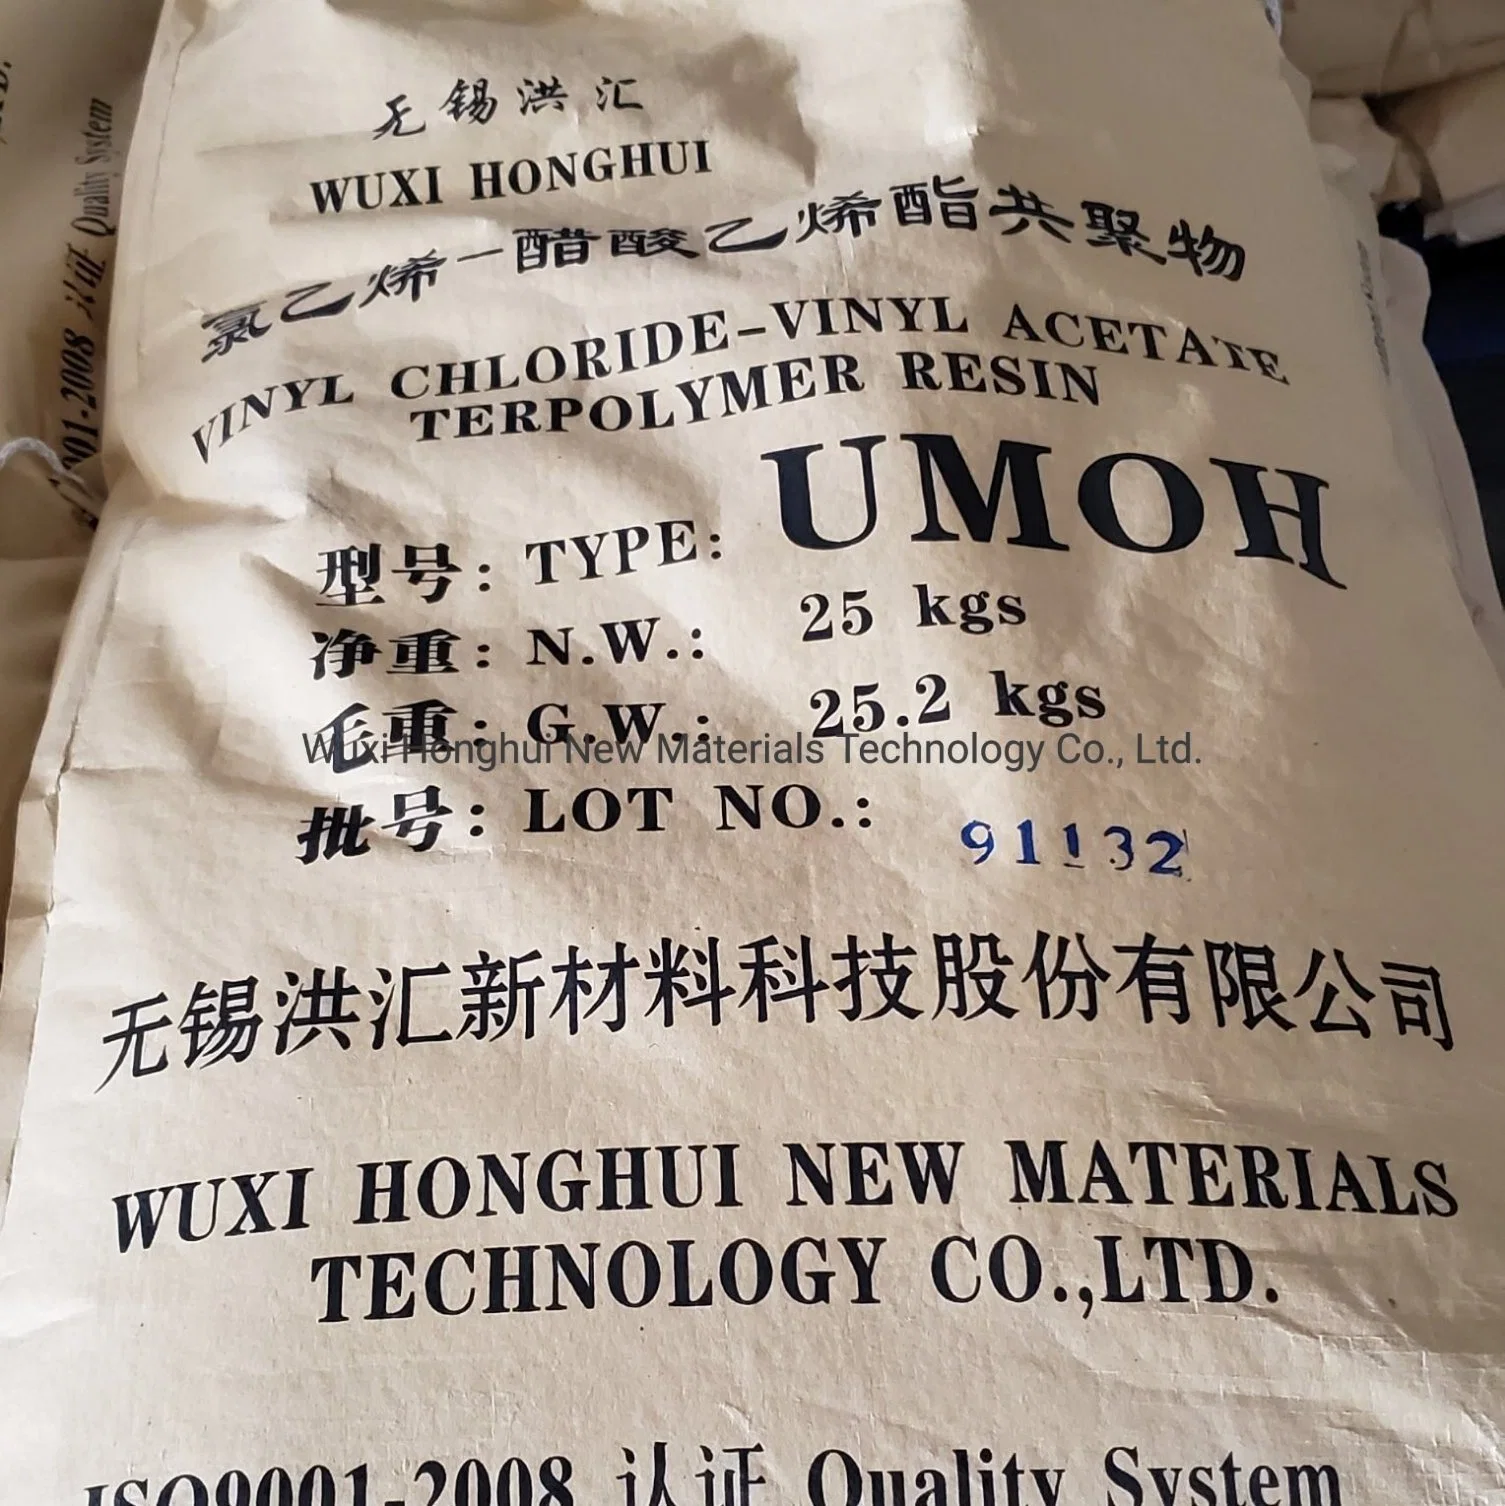 Honghui Umoh Résine de copolymère de chlorure de vinyle pour encre / revêtement Umoh / Vagh / Solbin a